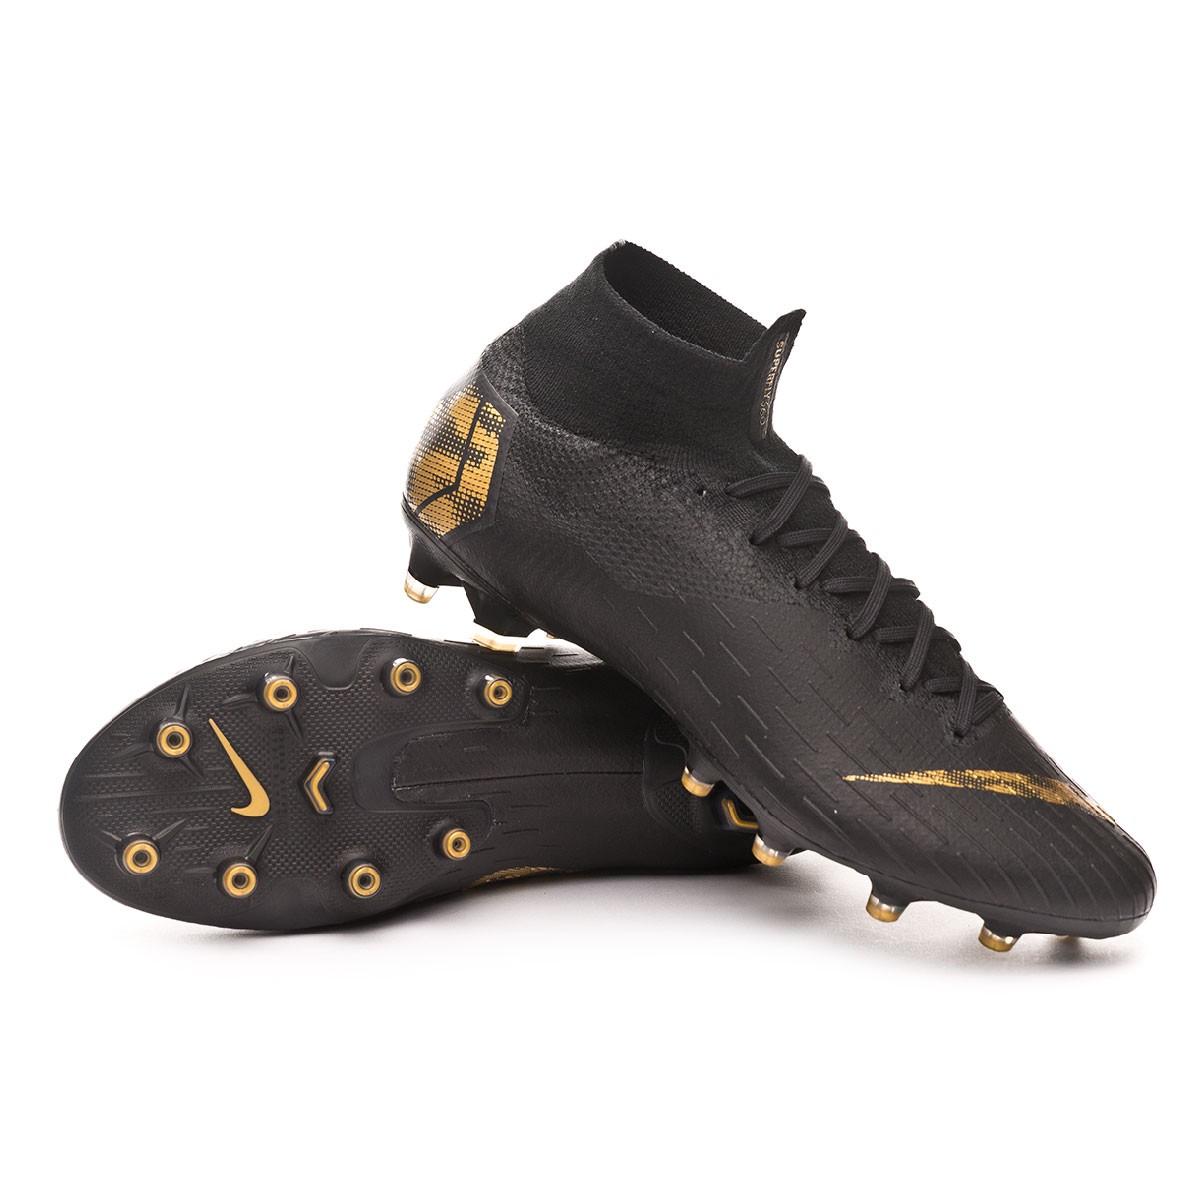 Bota de fútbol Nike Mercurial Superfly VI Elite AG-Pro Black-Metallic vivid  gold - Tienda de fútbol Fútbol Emotion